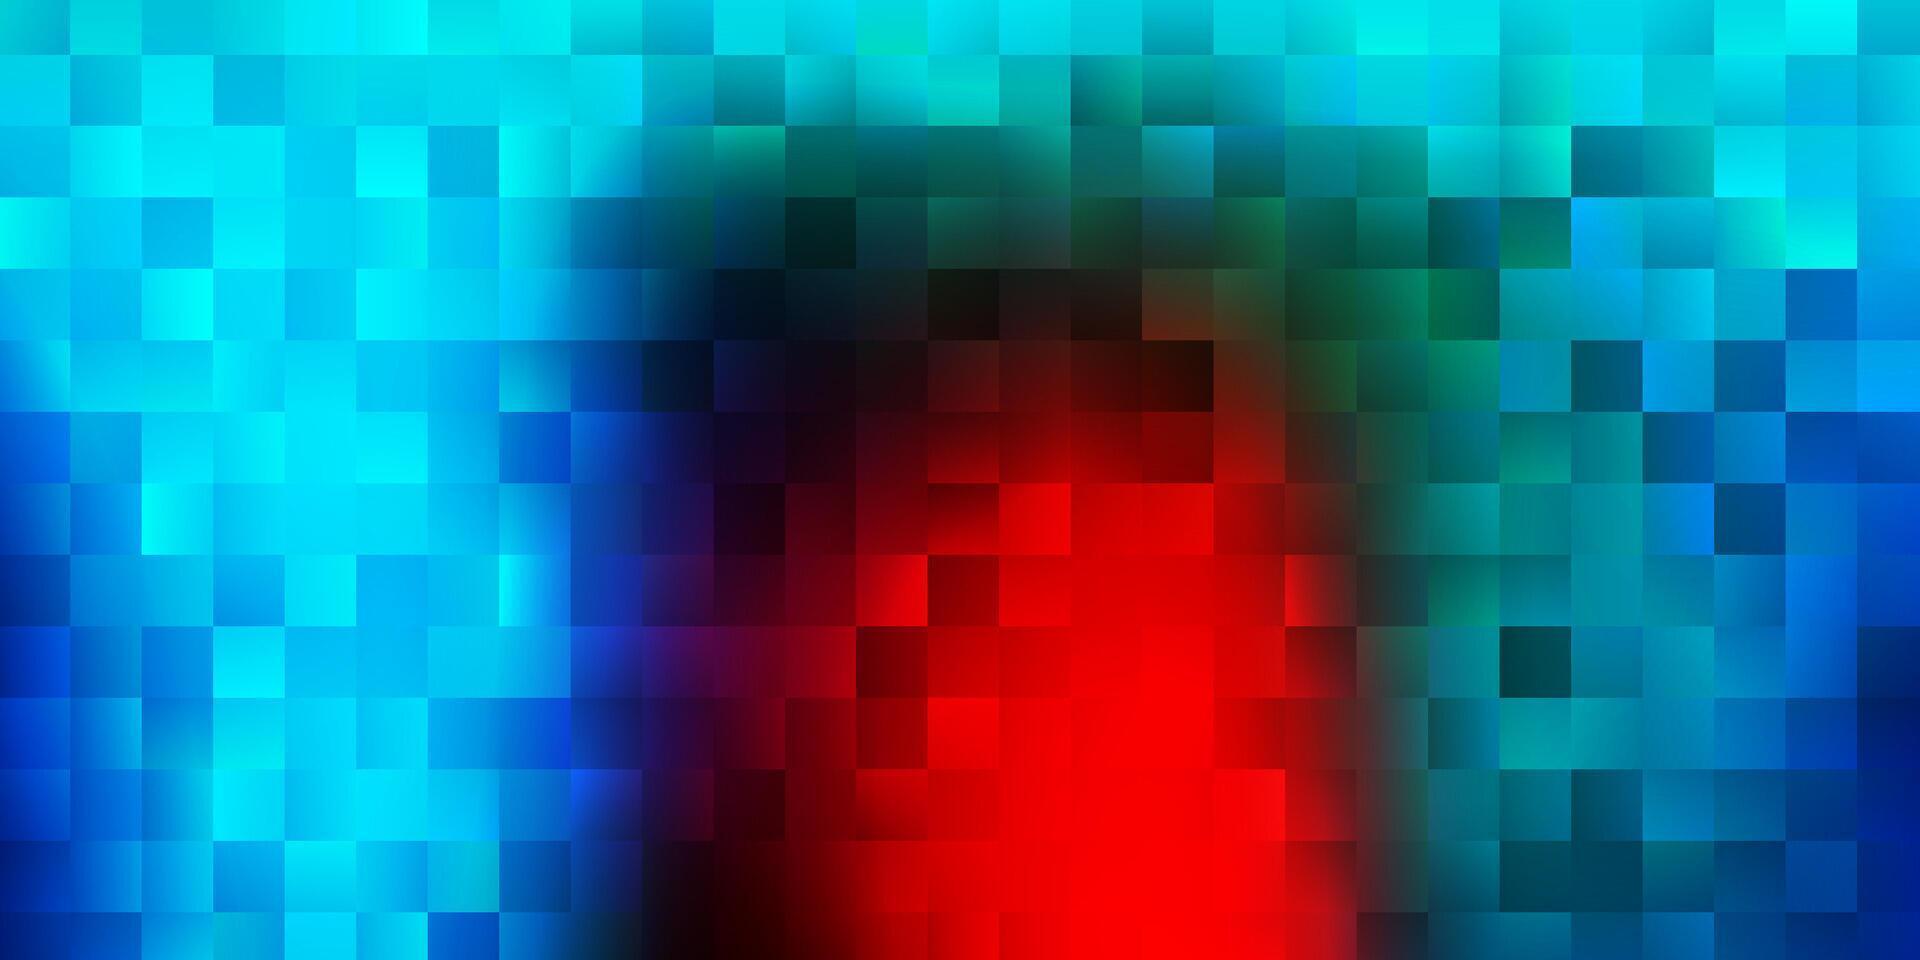 padrão de vetor azul e vermelho claro com retângulos.